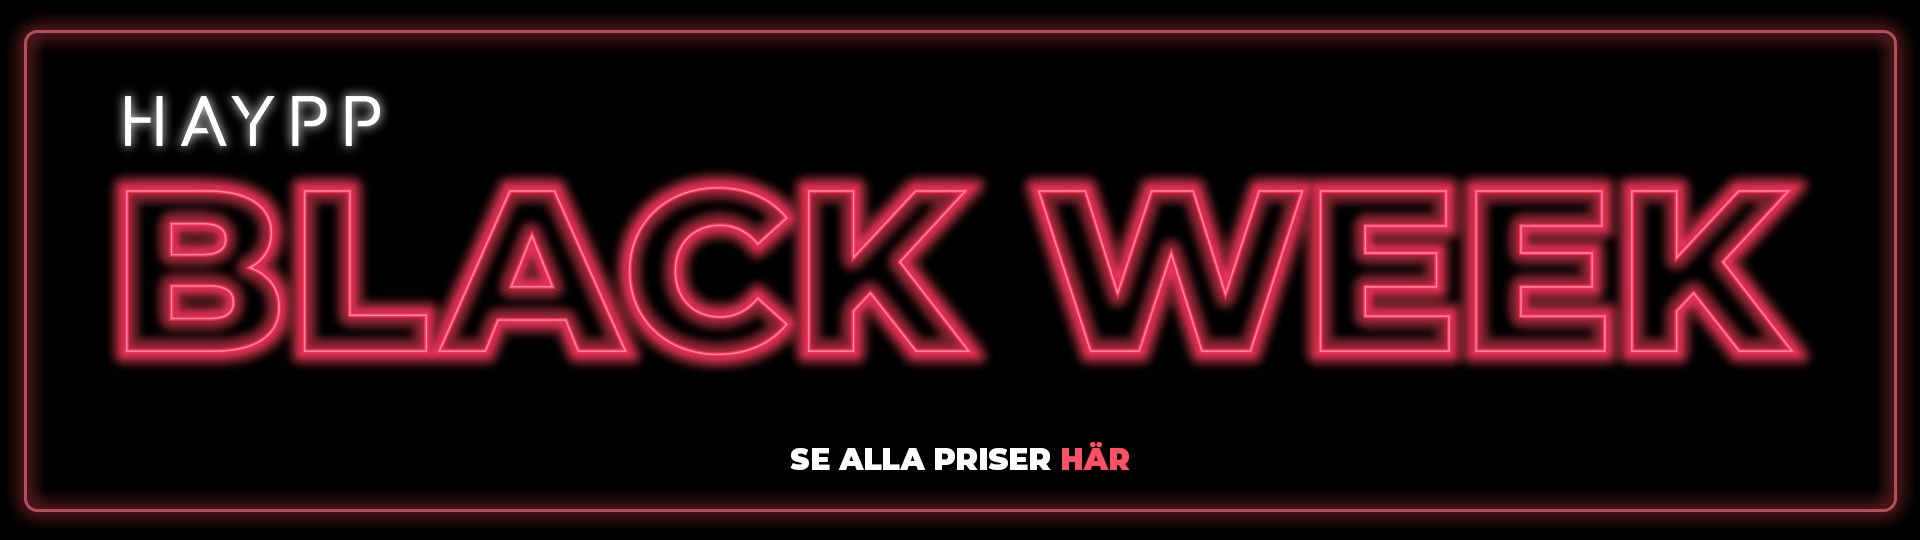 Black_Week